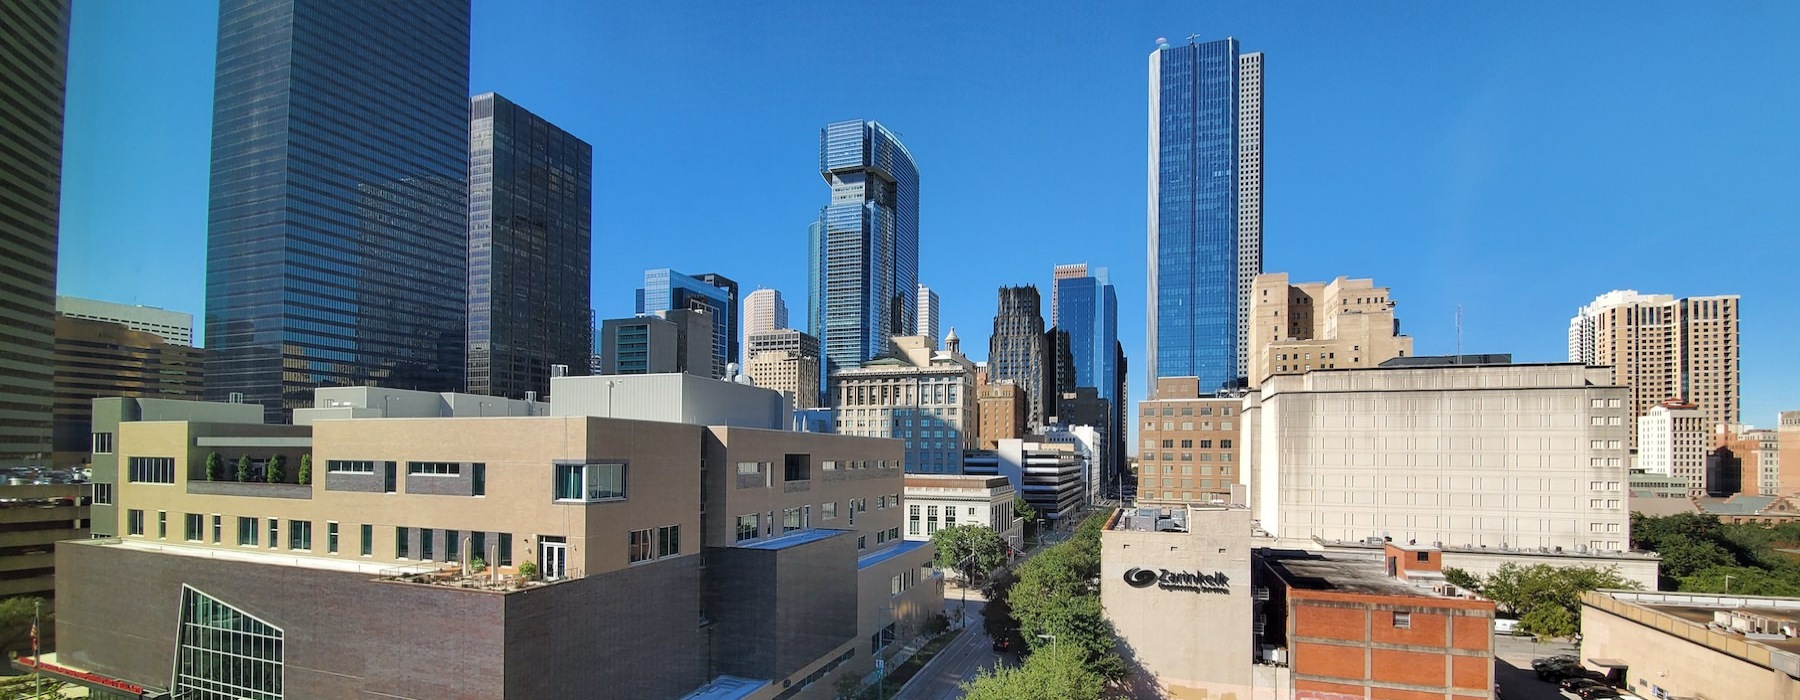 Neighborhood Banner - Houston skyline